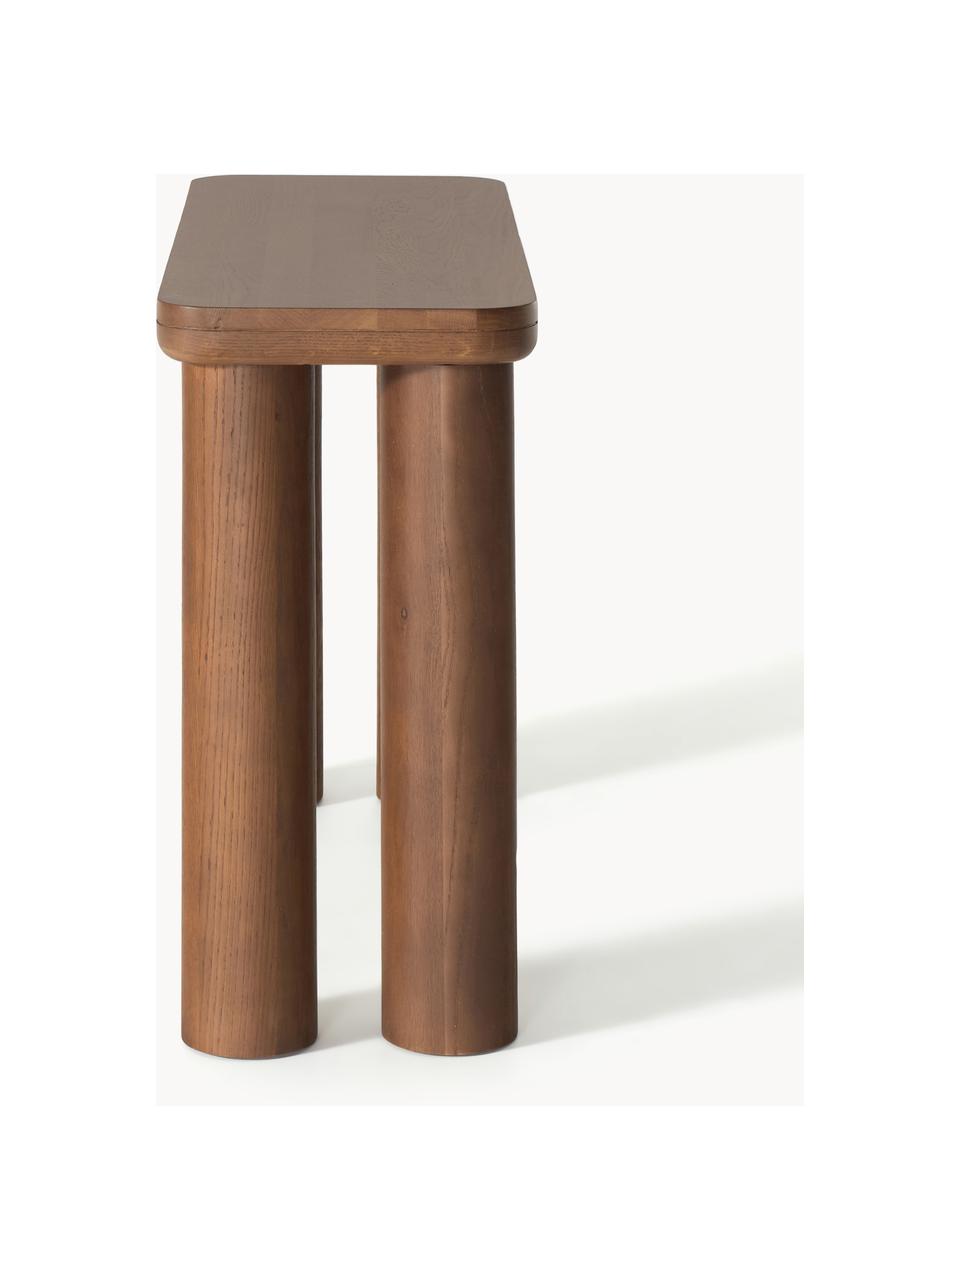 Konzolový stolík z dubového dreva Kalia, Masívne dubové drevo, lakované

Tento produkt je vyrobený z trvalo udržateľného dreva s certifikátom FSC®., Dubové drevo, hnedá lakovaná, Š 110 x V 77 cm